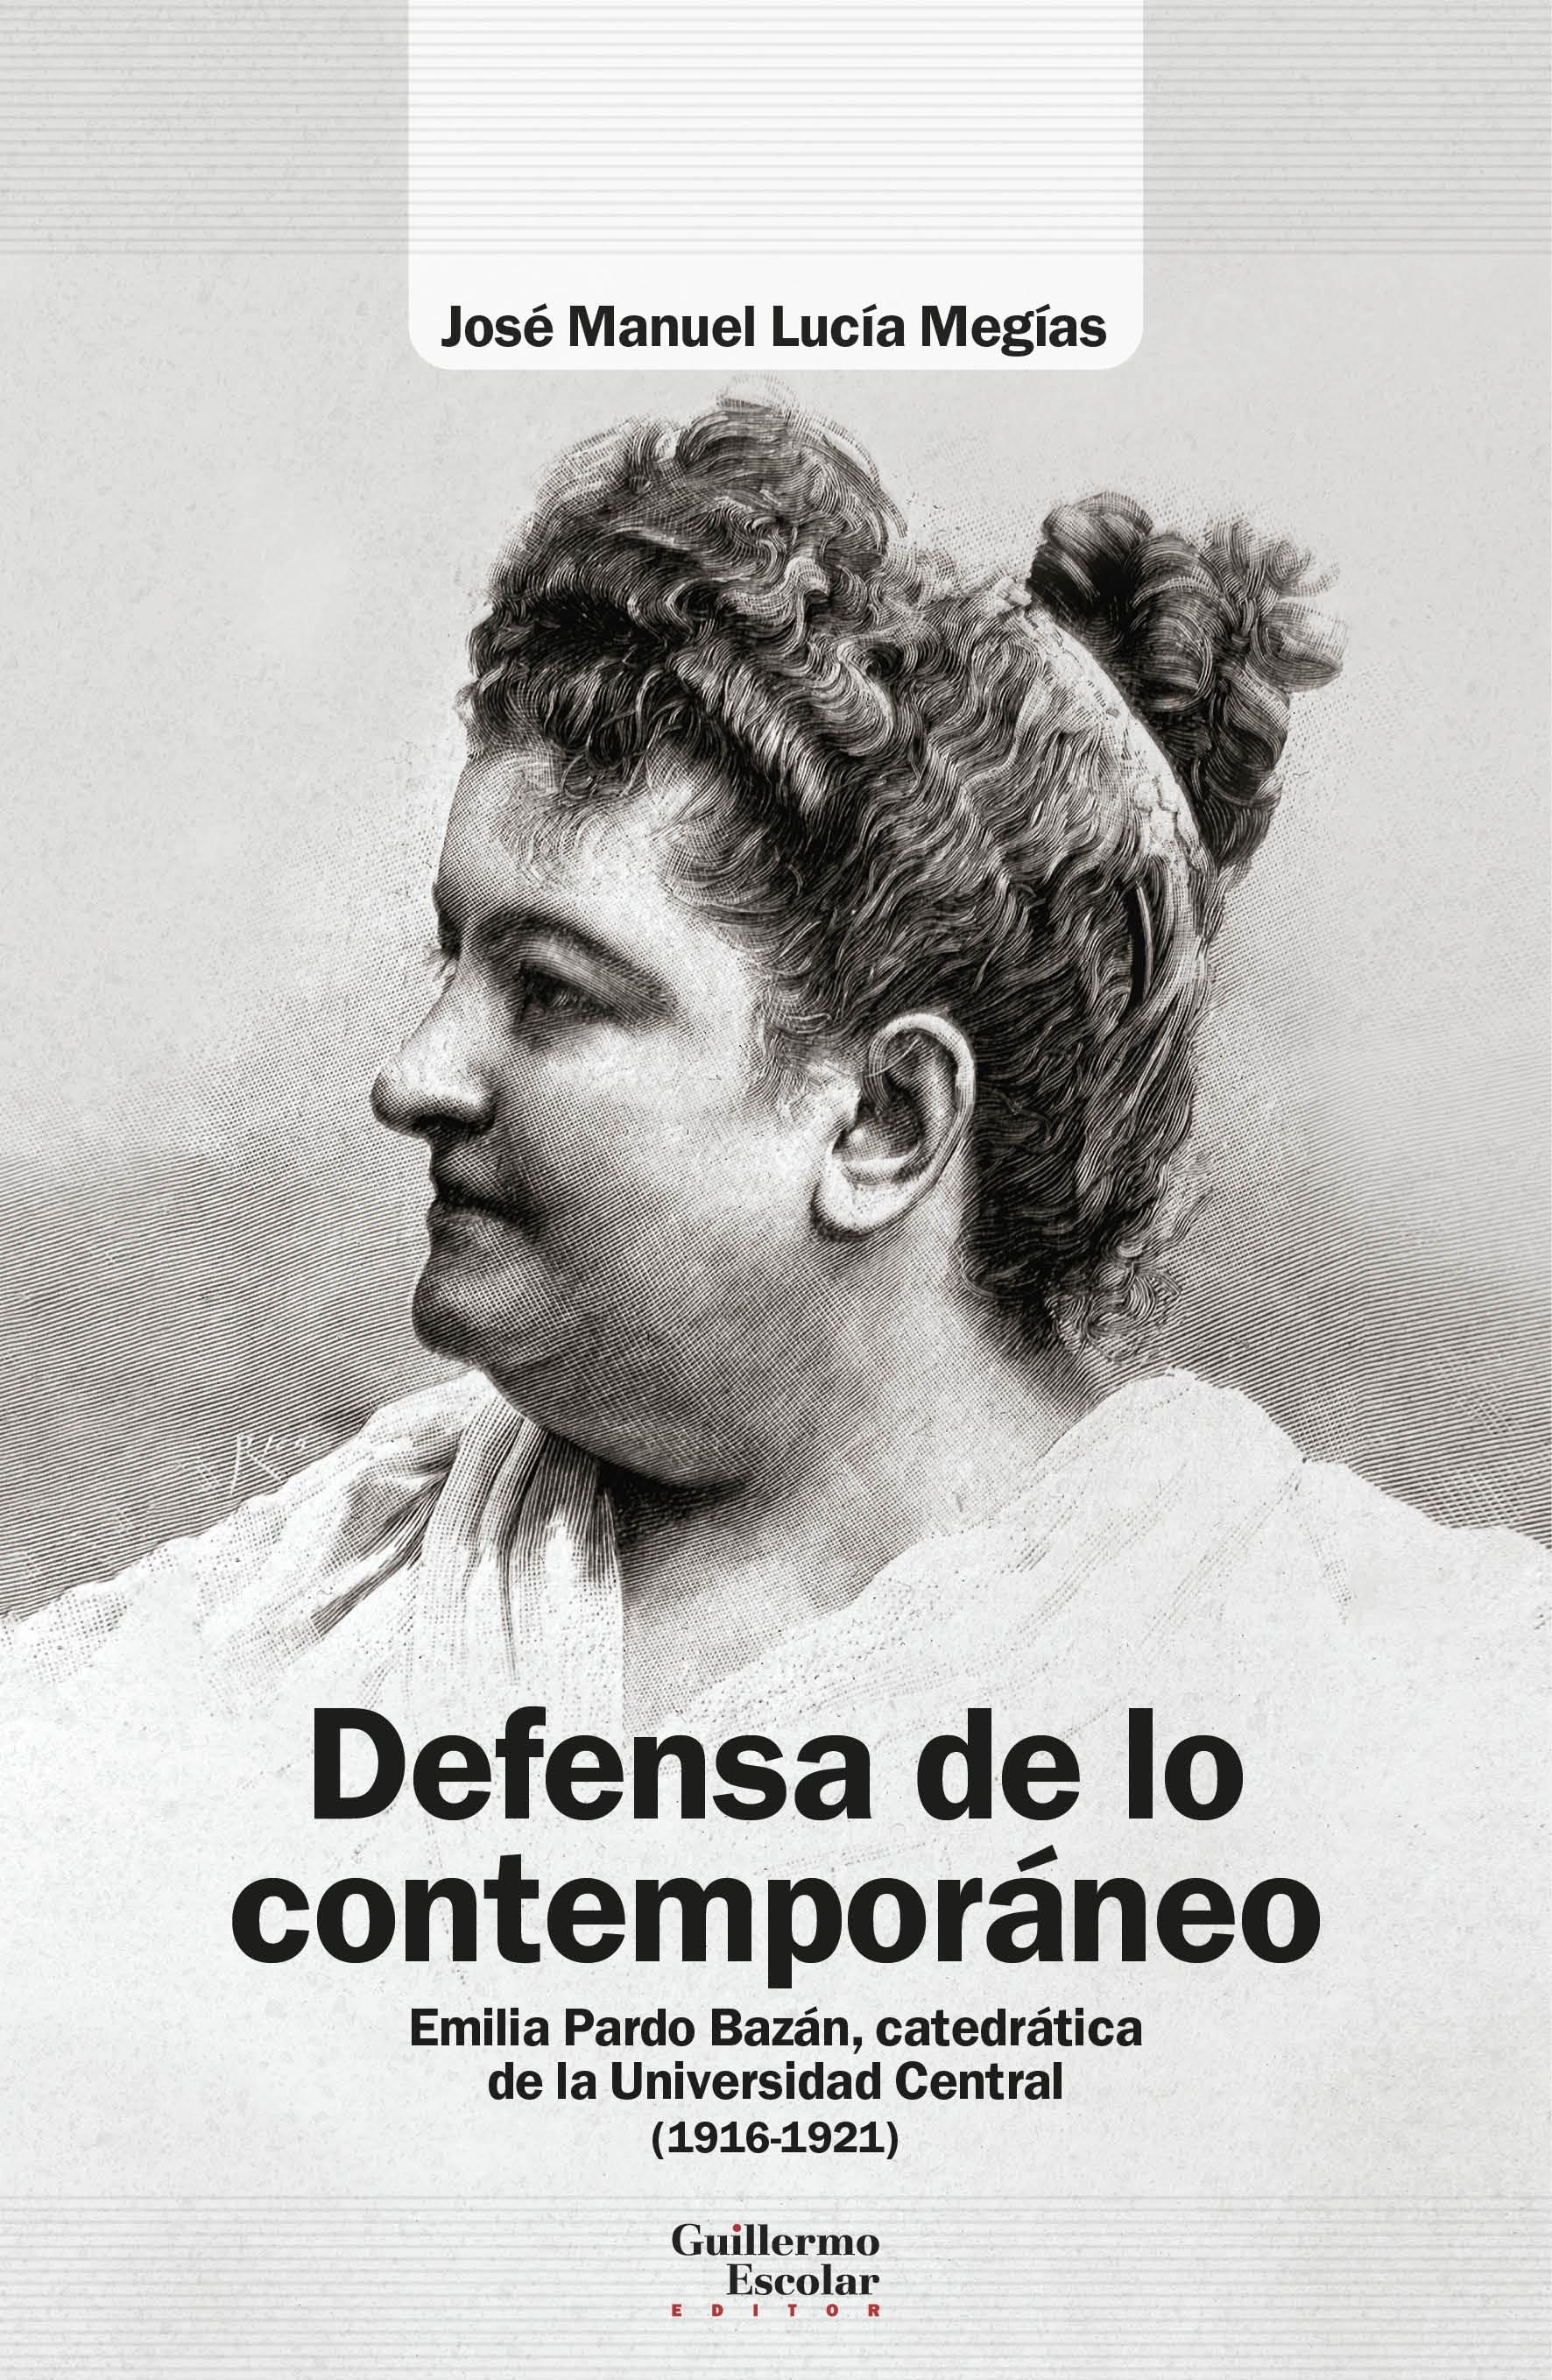 Defensa de lo contemporáneo "Emilia Pardo Bazán, catedrática de la Universidad Central (1918-1921)"